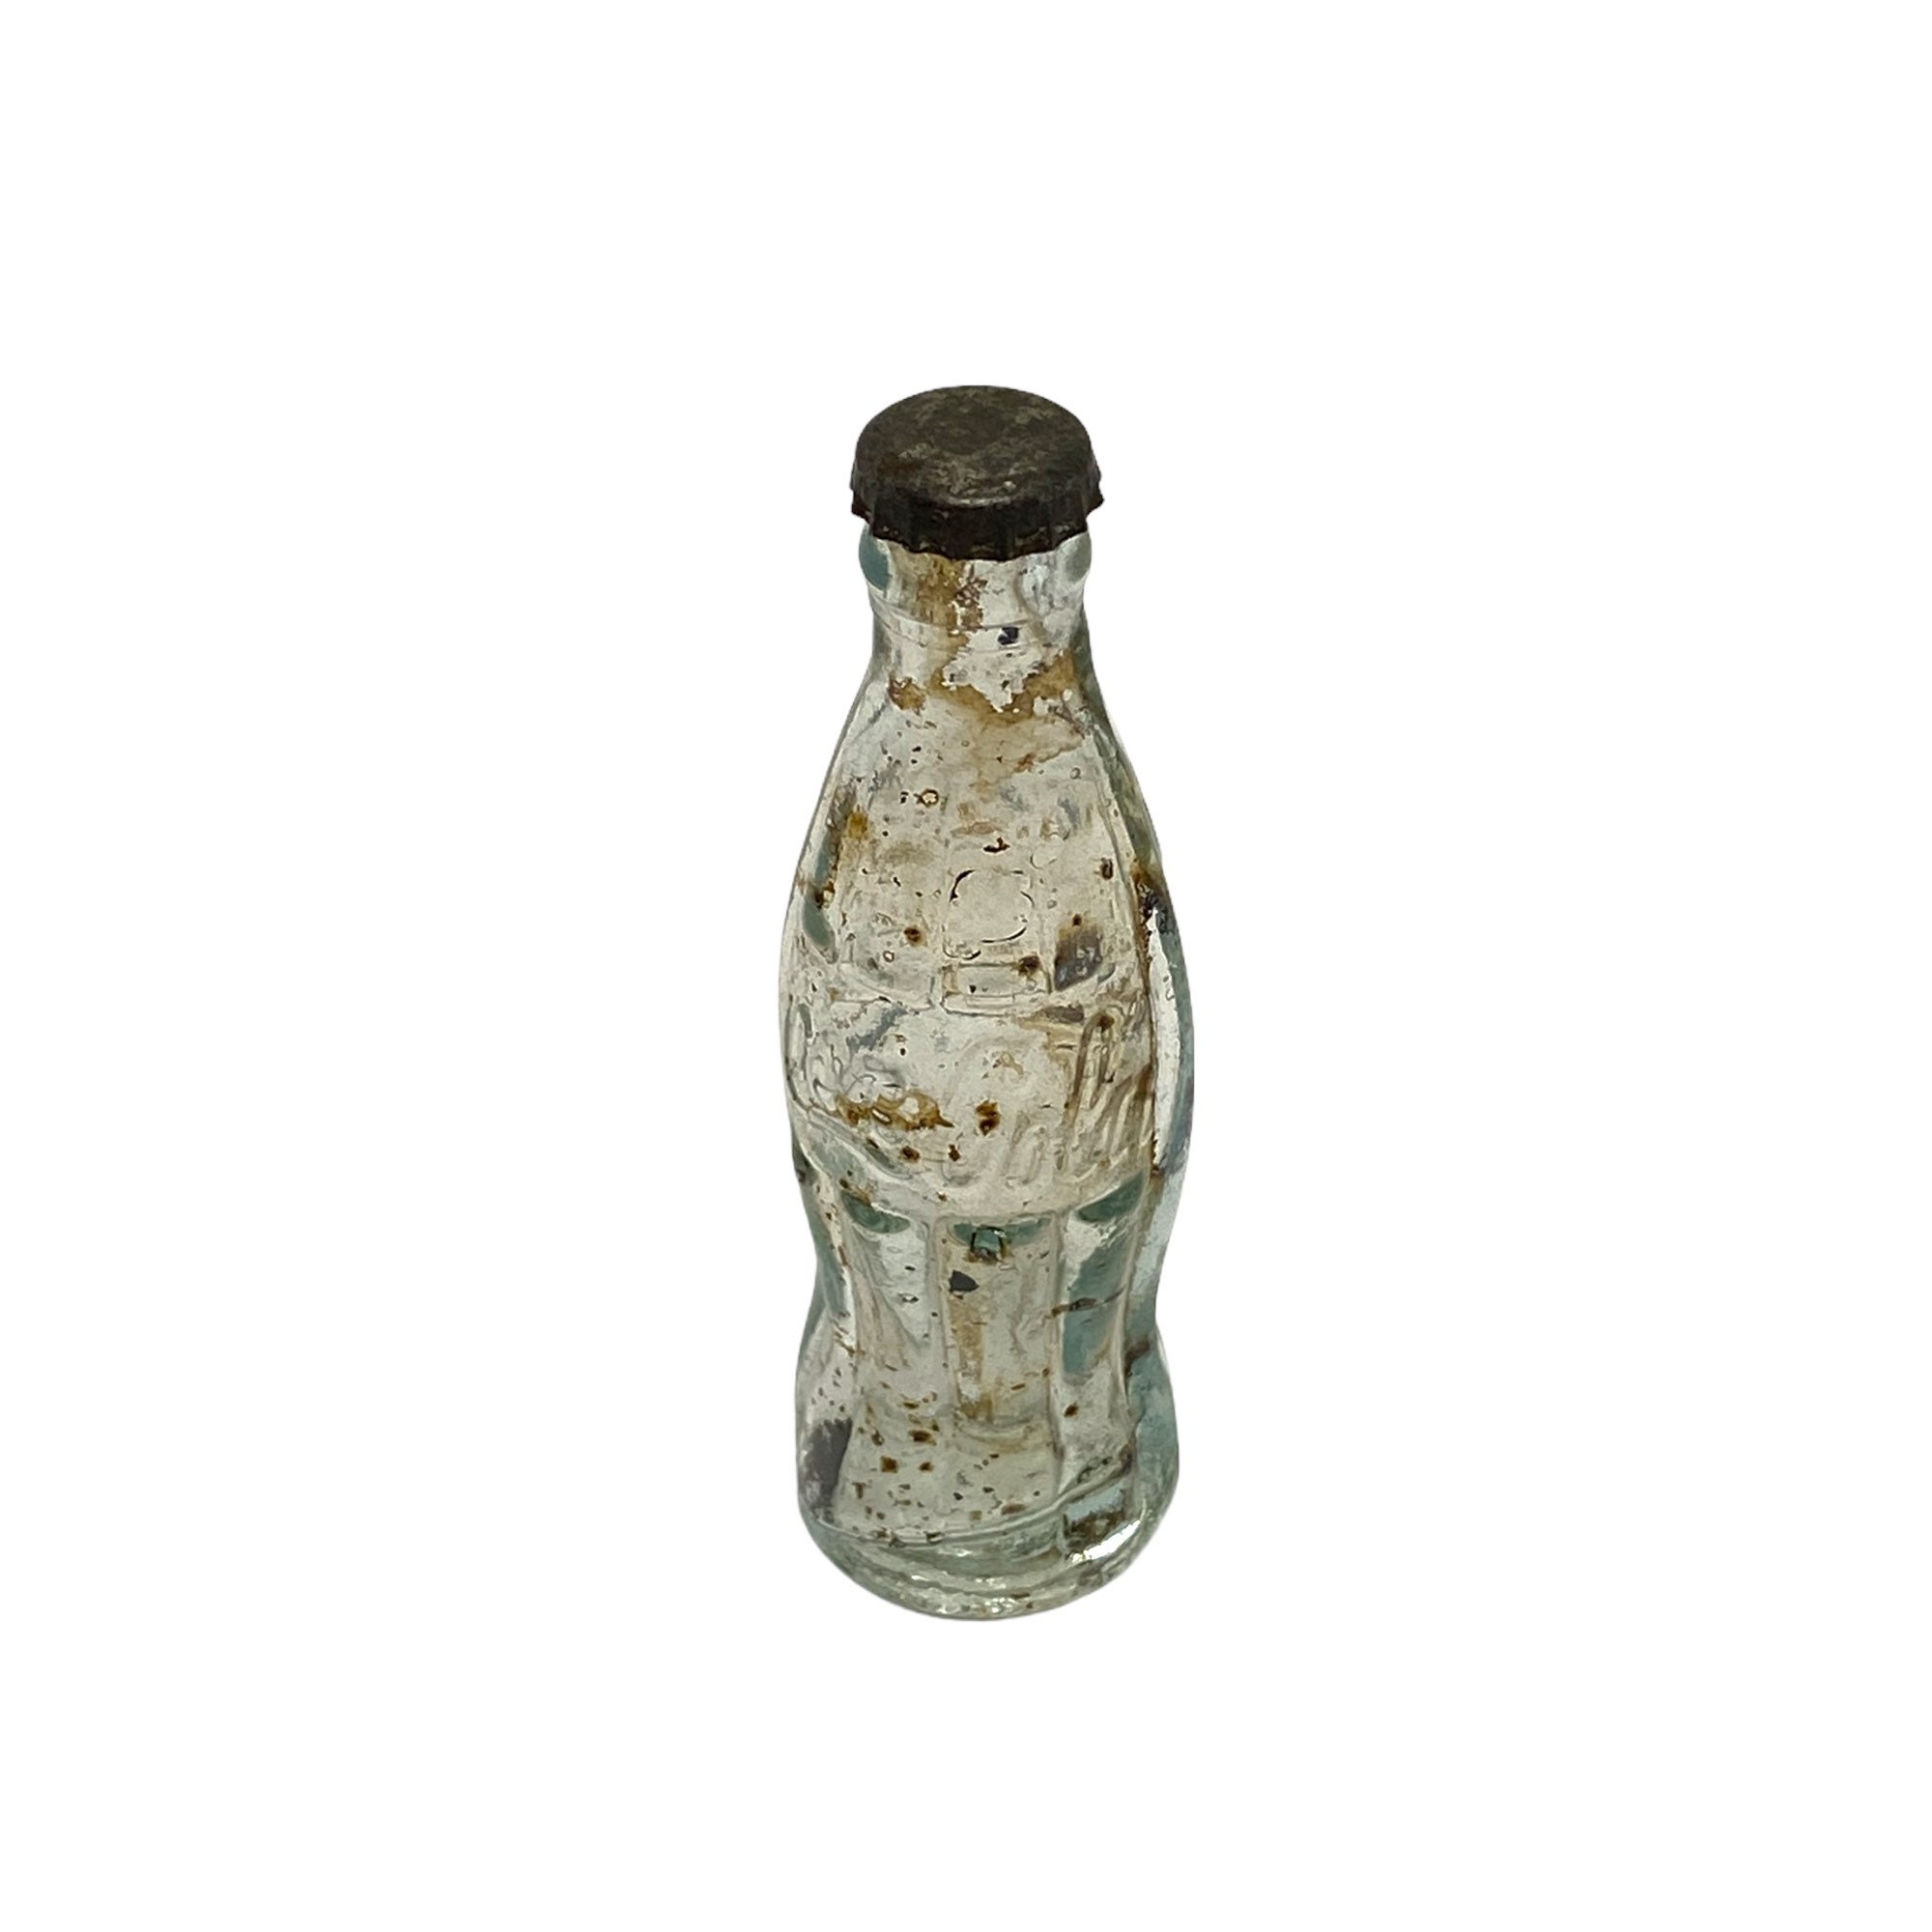 Coca Cola - Lot mini bouteilles en verres + 1 en métal, couleur Argent